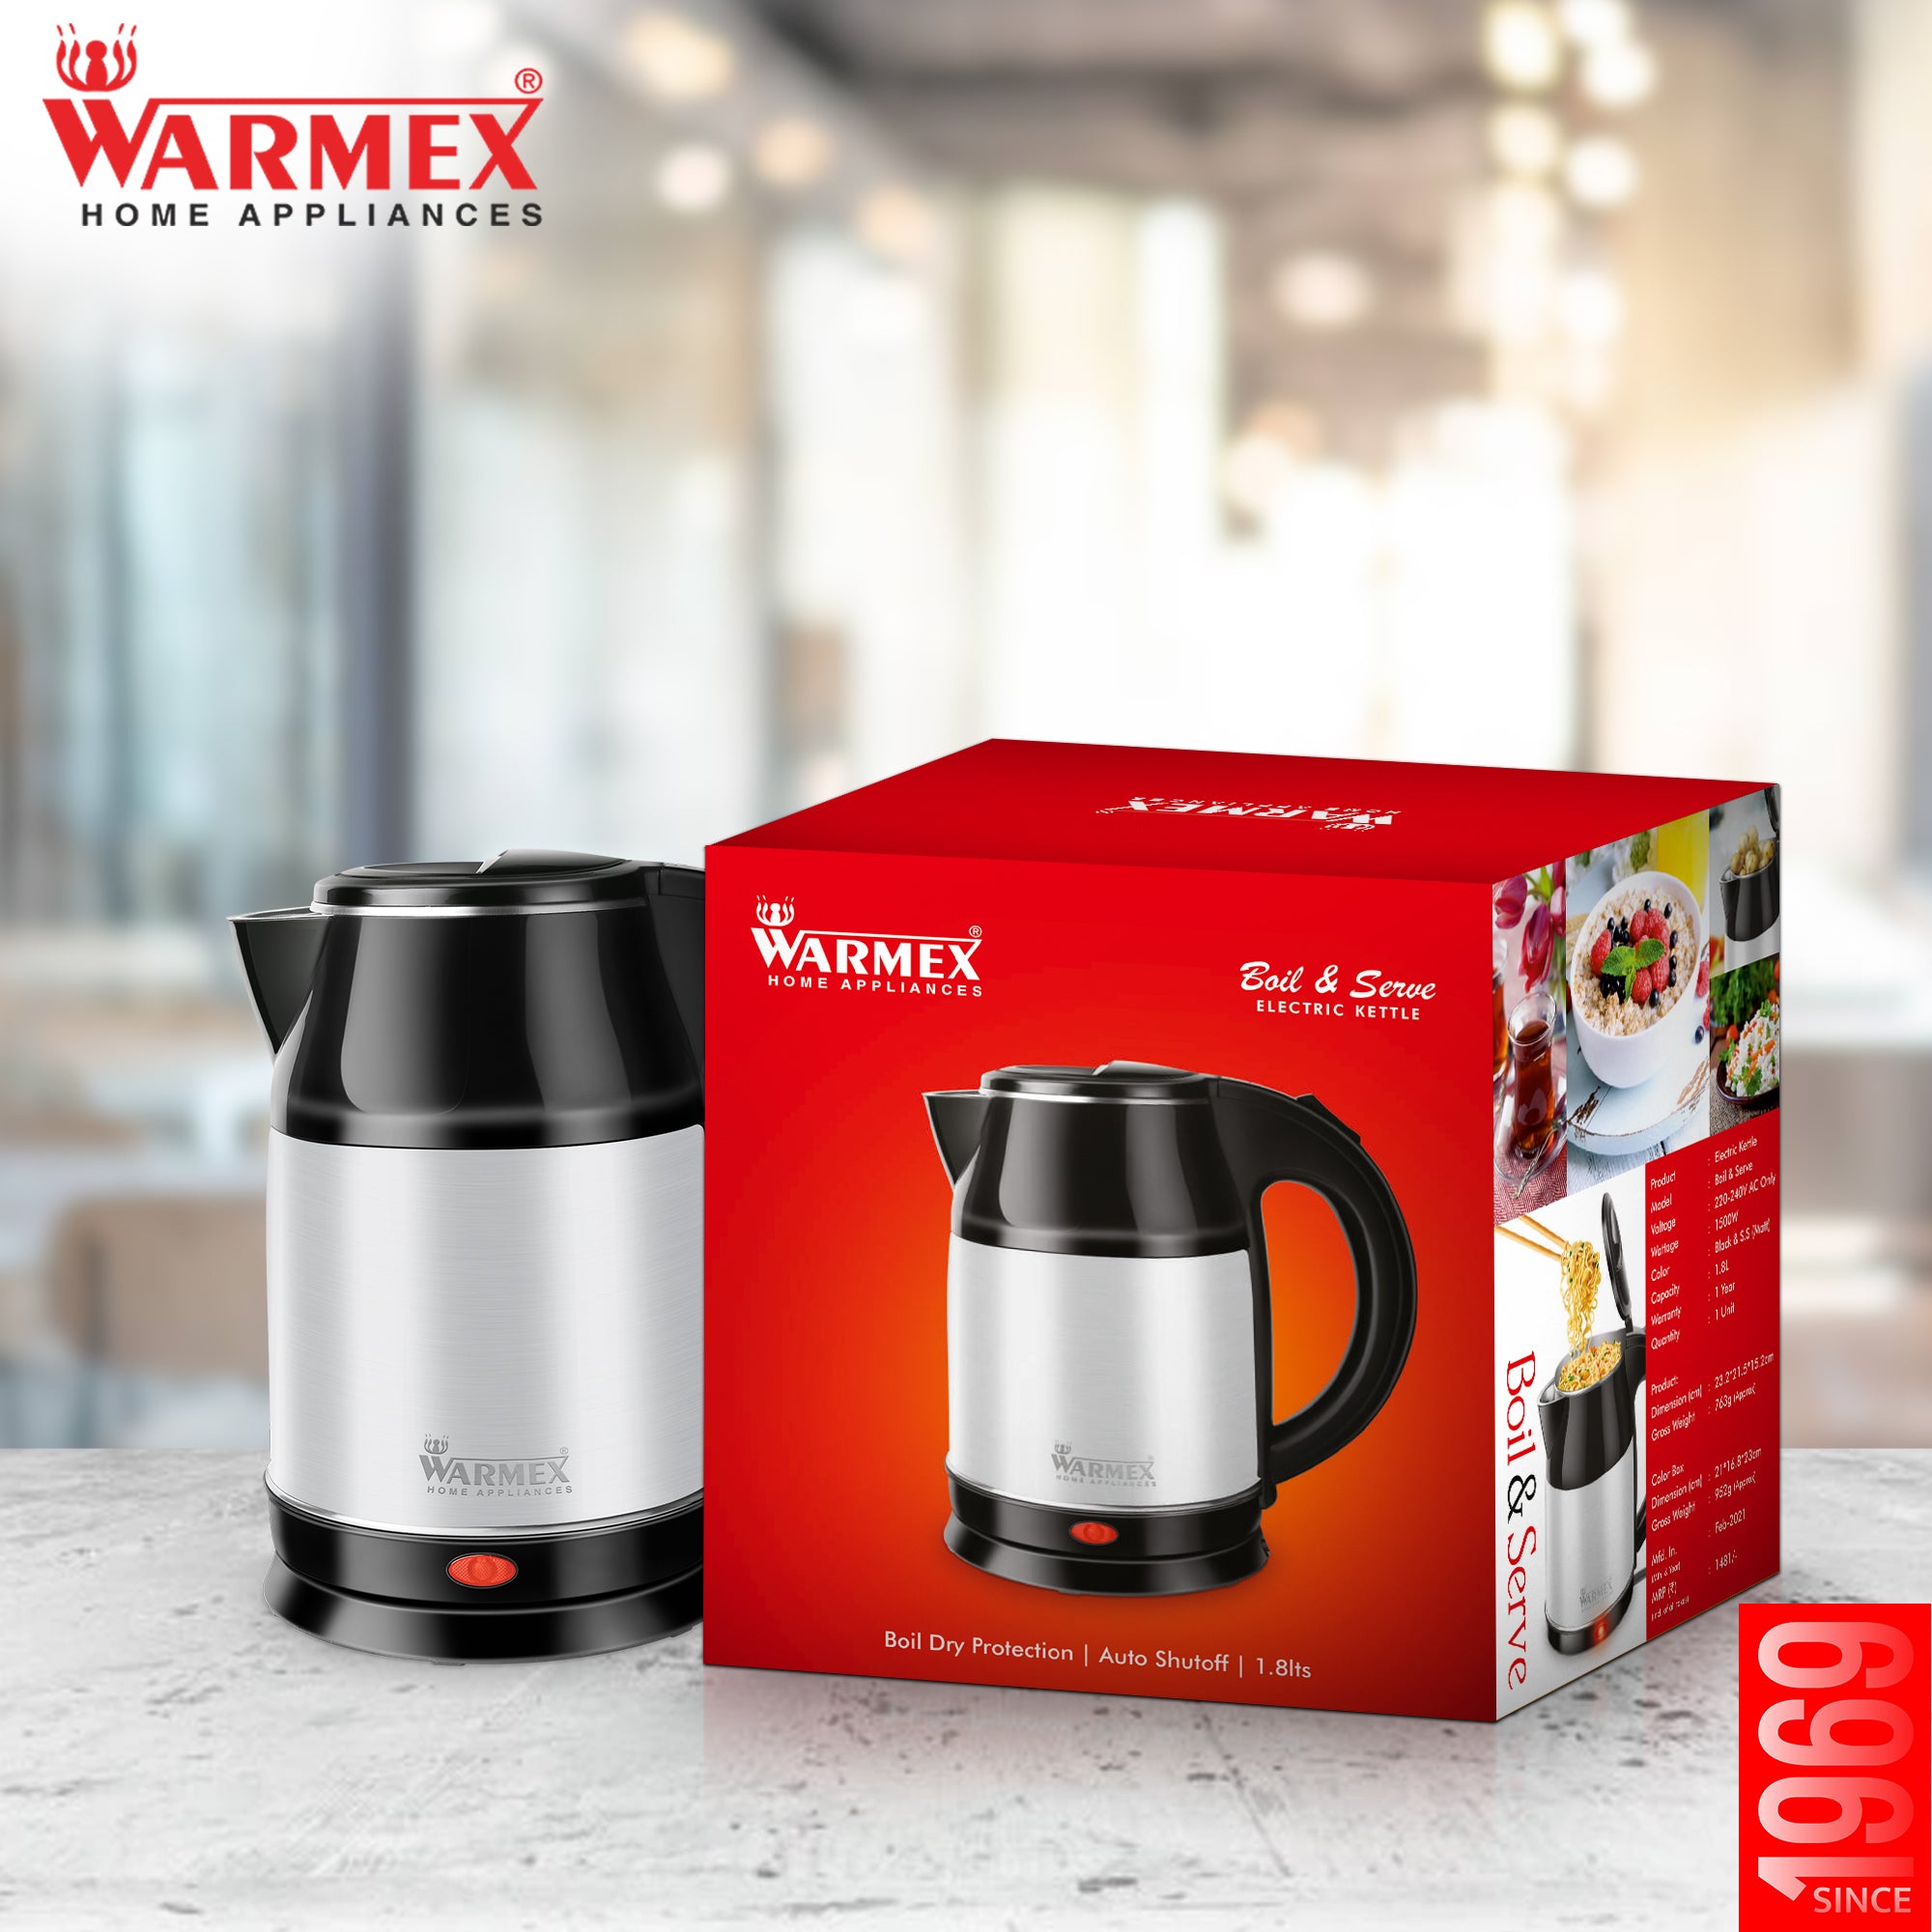 Warmex Home Appliances Electric Kettle BOIL & SERVE